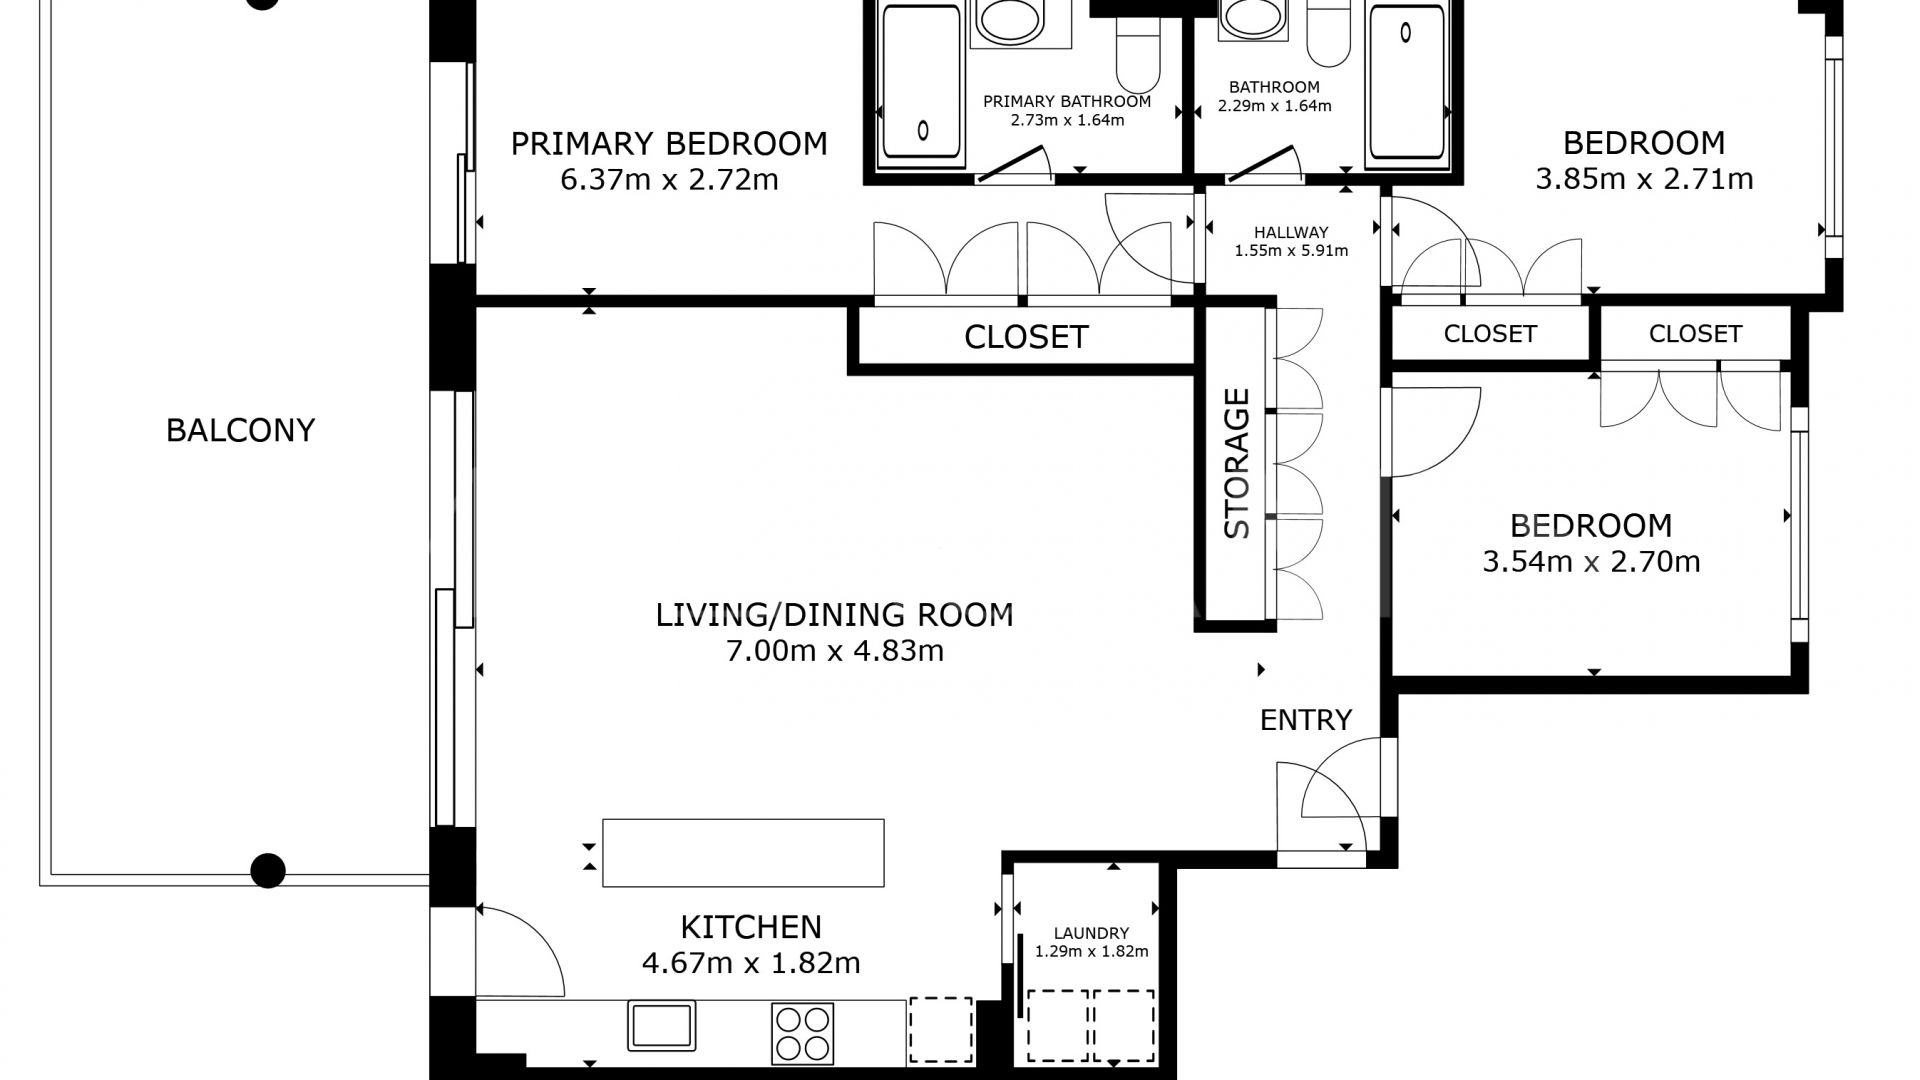 3 bedrooms ground floor apartment for sale in Cala de Mijas